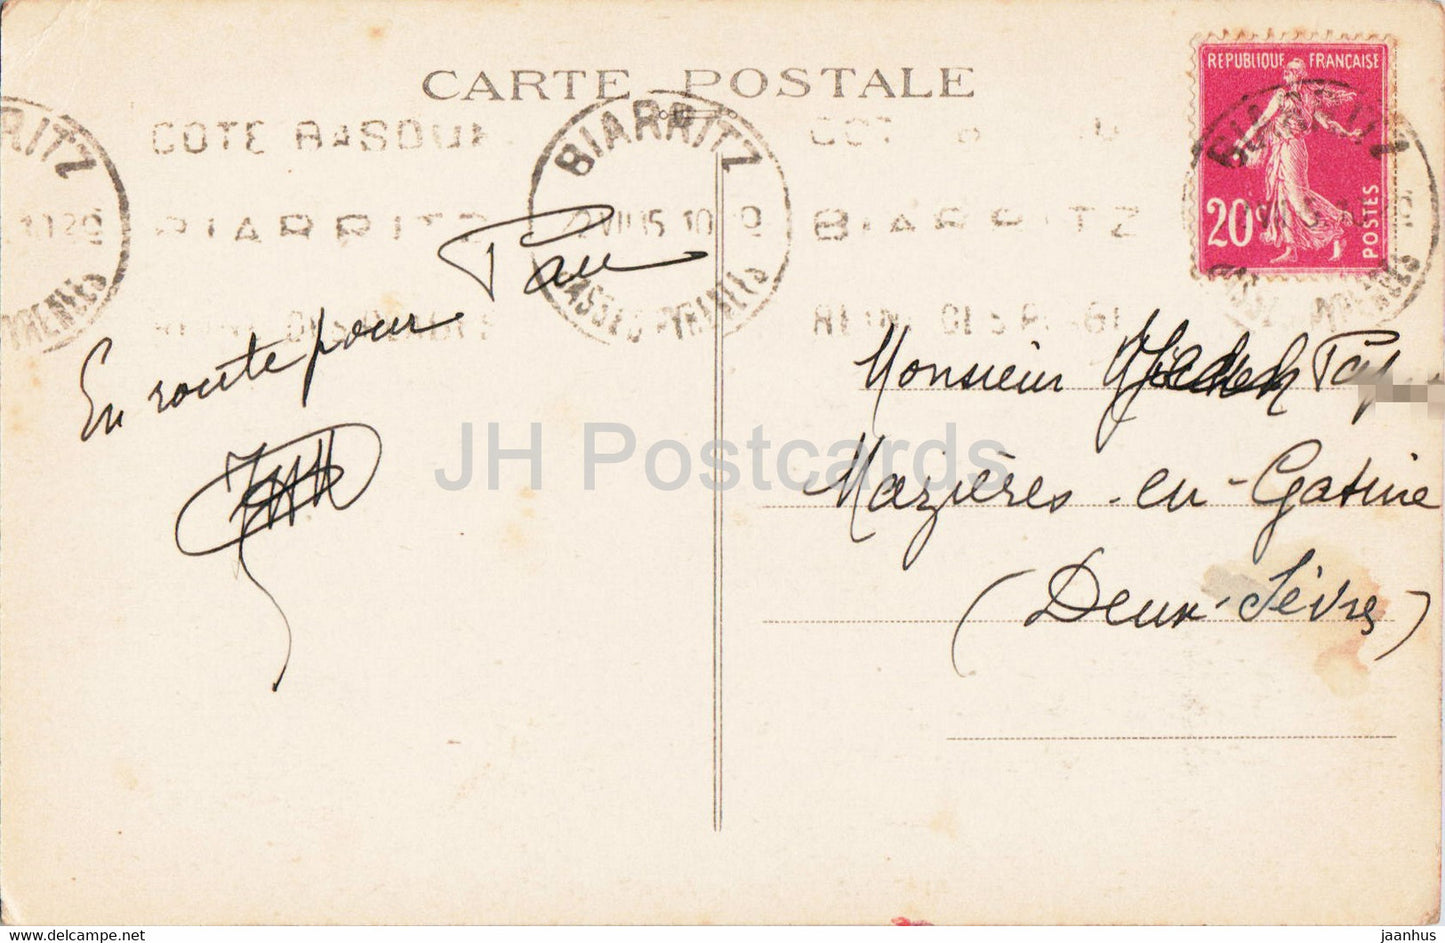 Biarritz - Rocher de la Vierge - Entree du Port Vieux - 15 - old postcard - 1935 - France - used